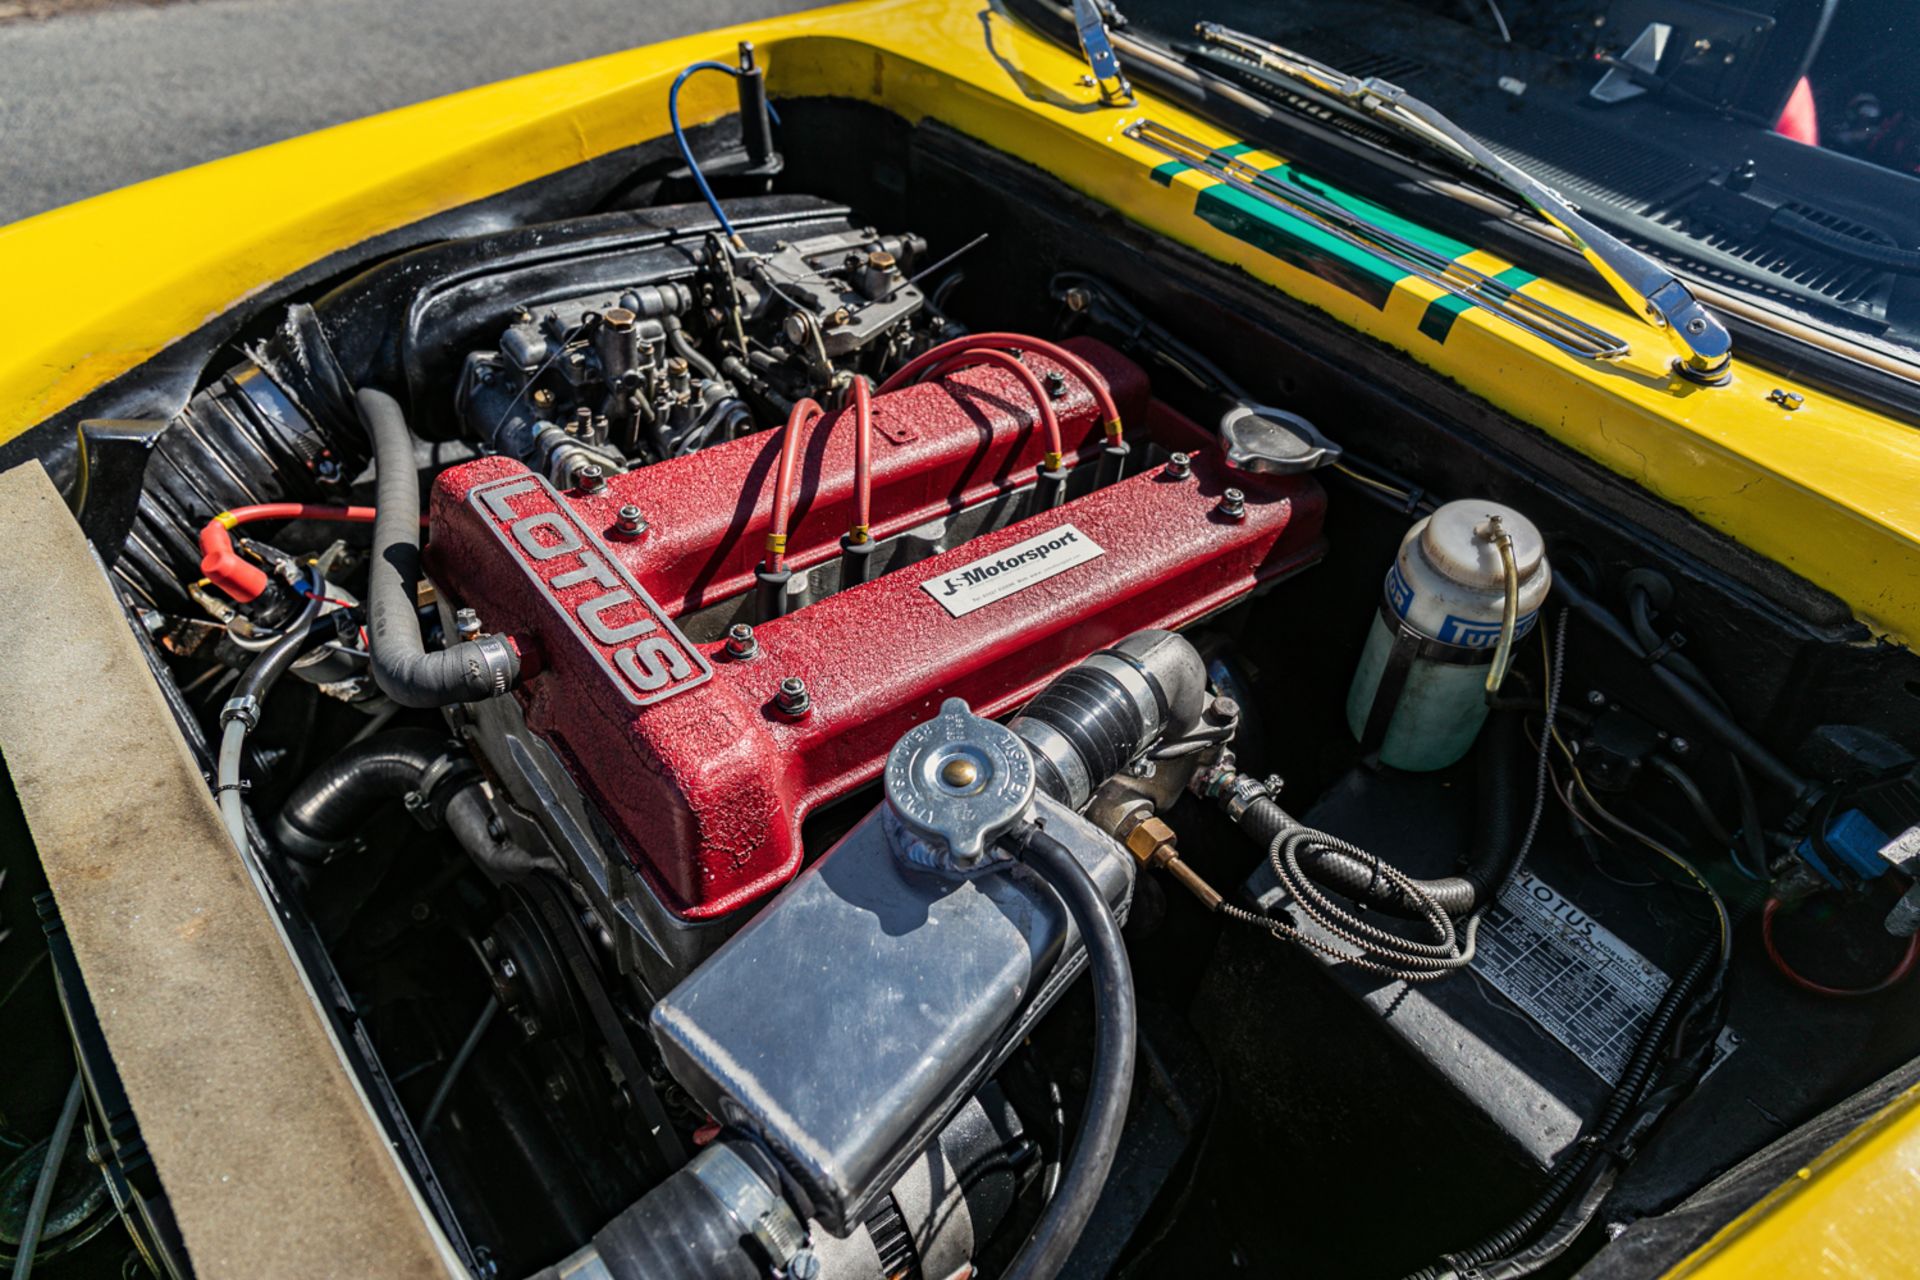 1966 Lotus Elan S3 Historic Rally Car - Image 14 of 25